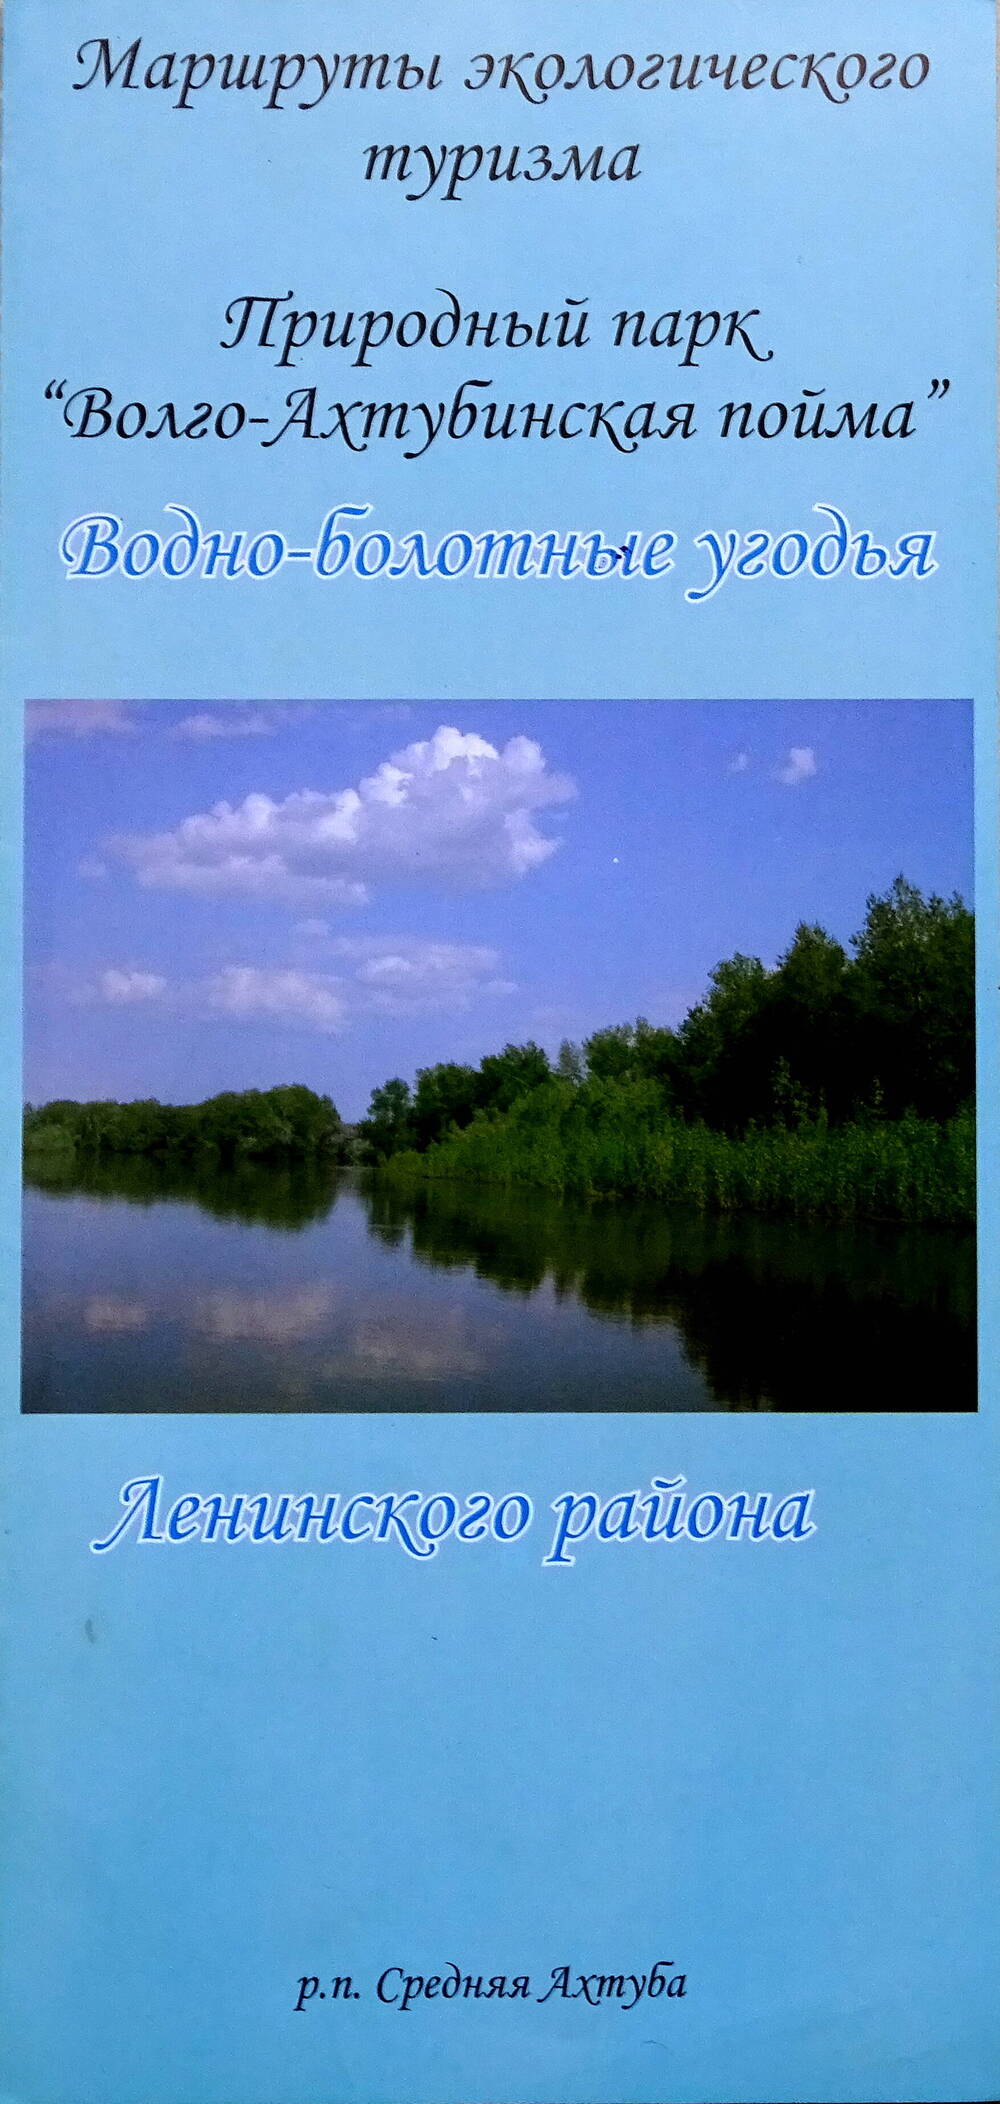 Буклет «Водно-болотные угодья Ленинского района».